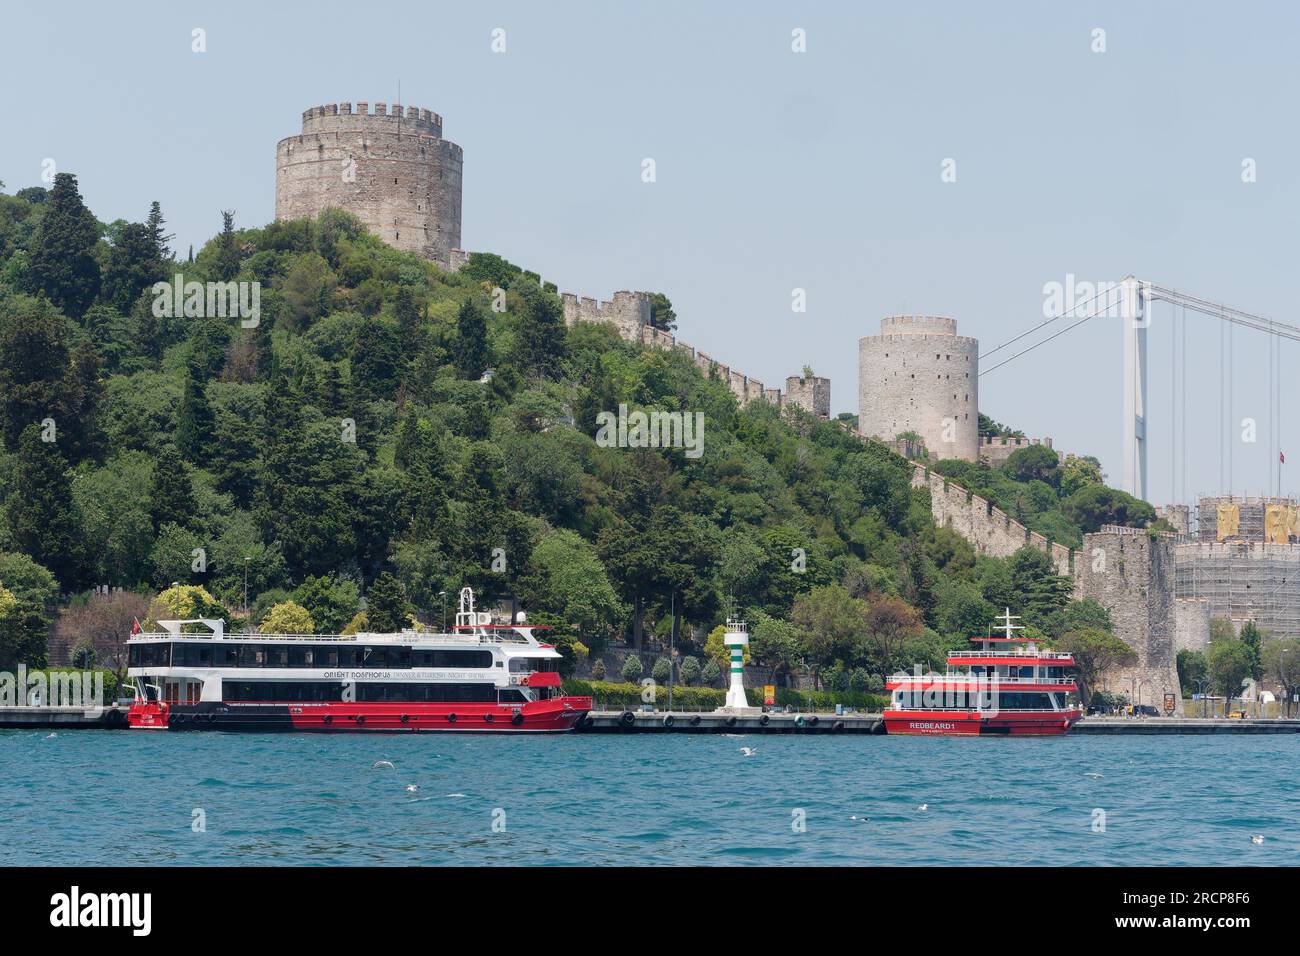 Fortezza di Rumeli su una collina con traghetti passeggeri sul lungomare del Bosforo e sul ponte Fatih Sultan Mehmet, Istanbul, Turchia Foto Stock